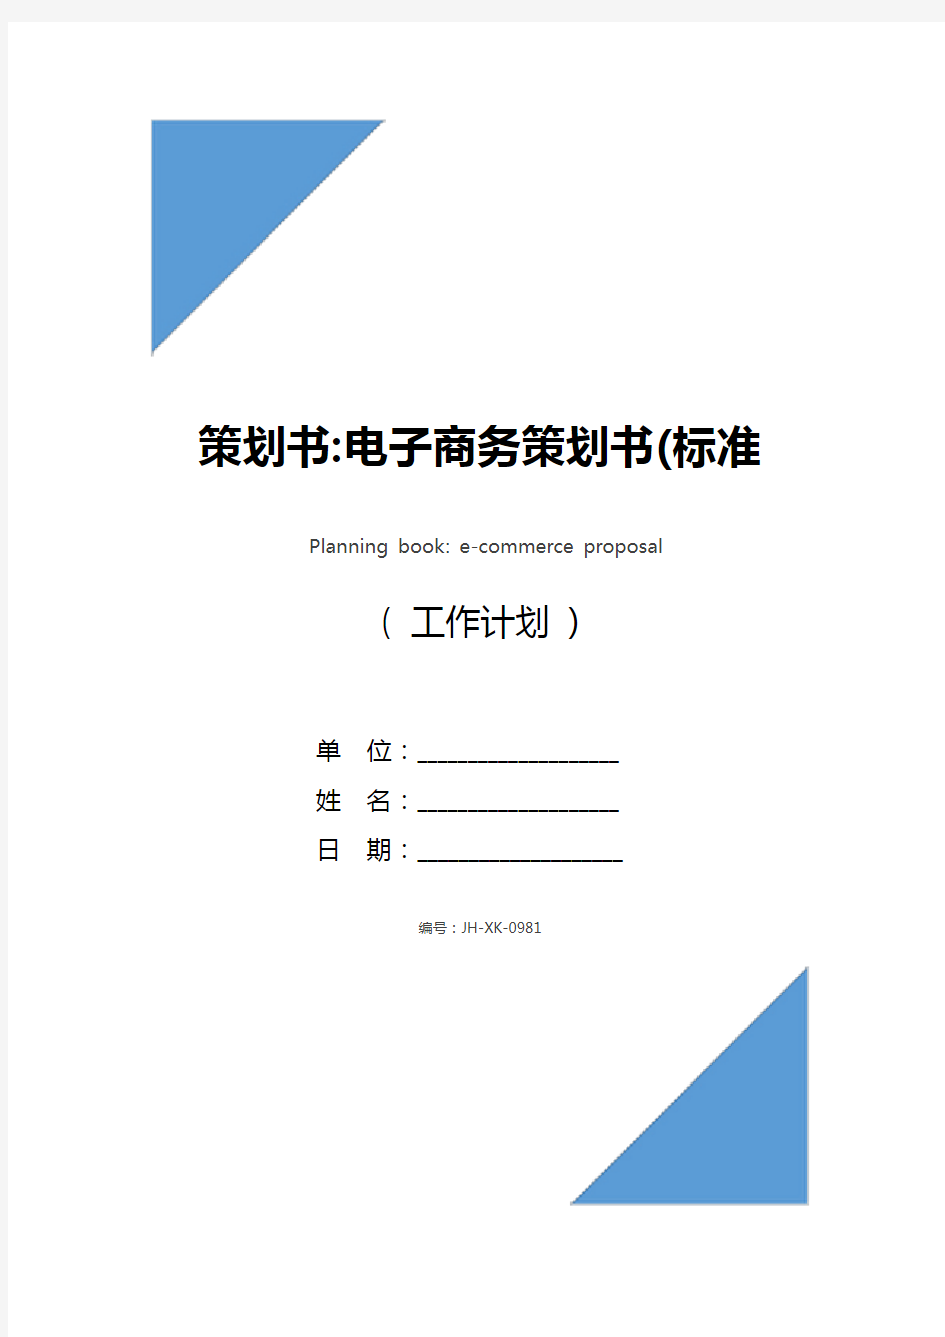 策划书-电子商务策划书(标准版)